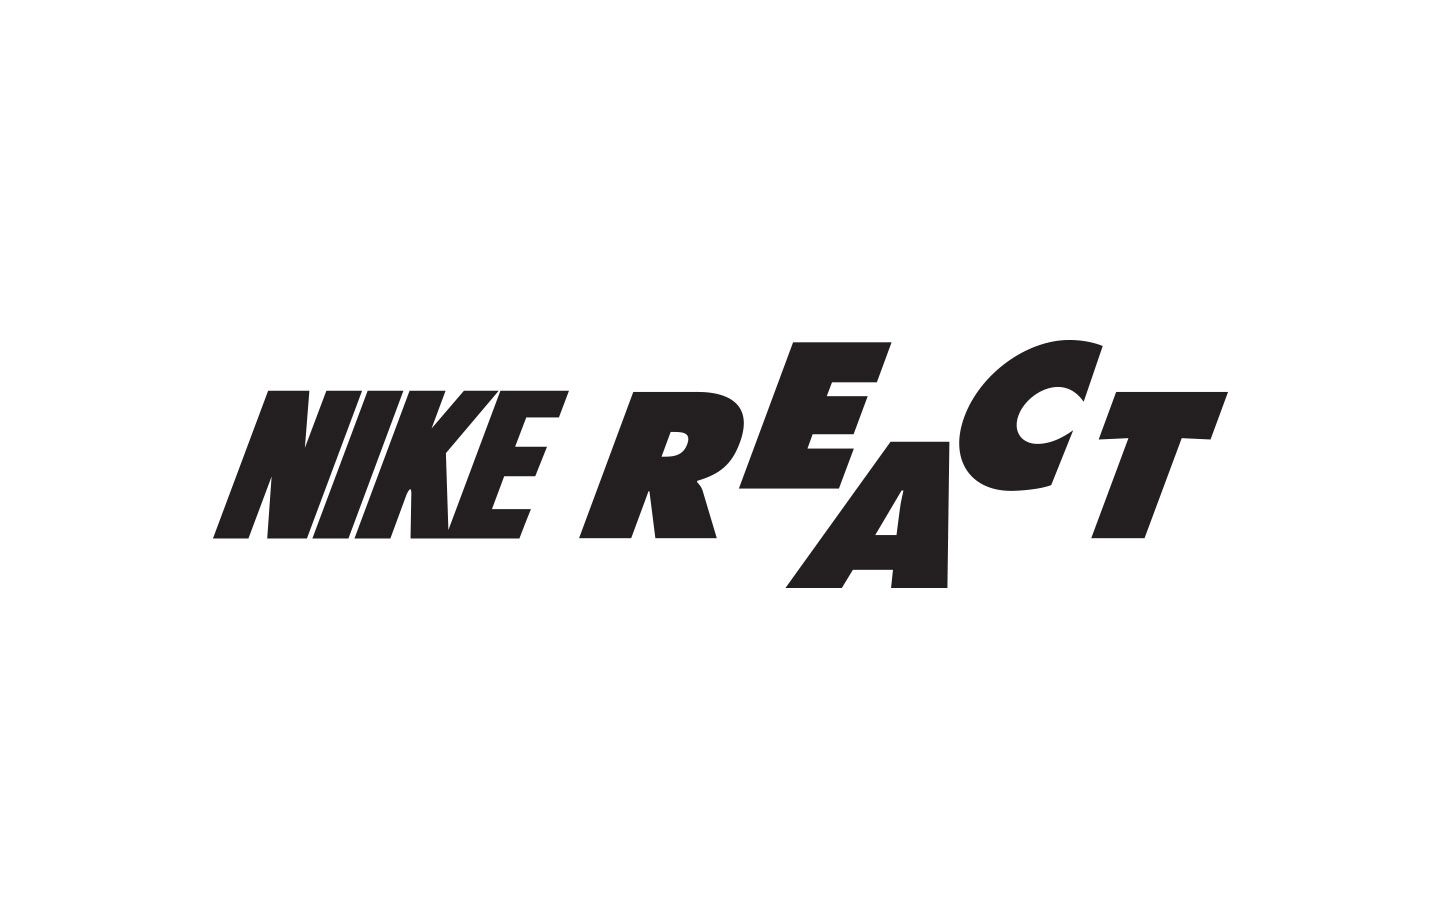 Nike React: Basketbol ayakkabıları için en iyi yastıklama teknolojisi